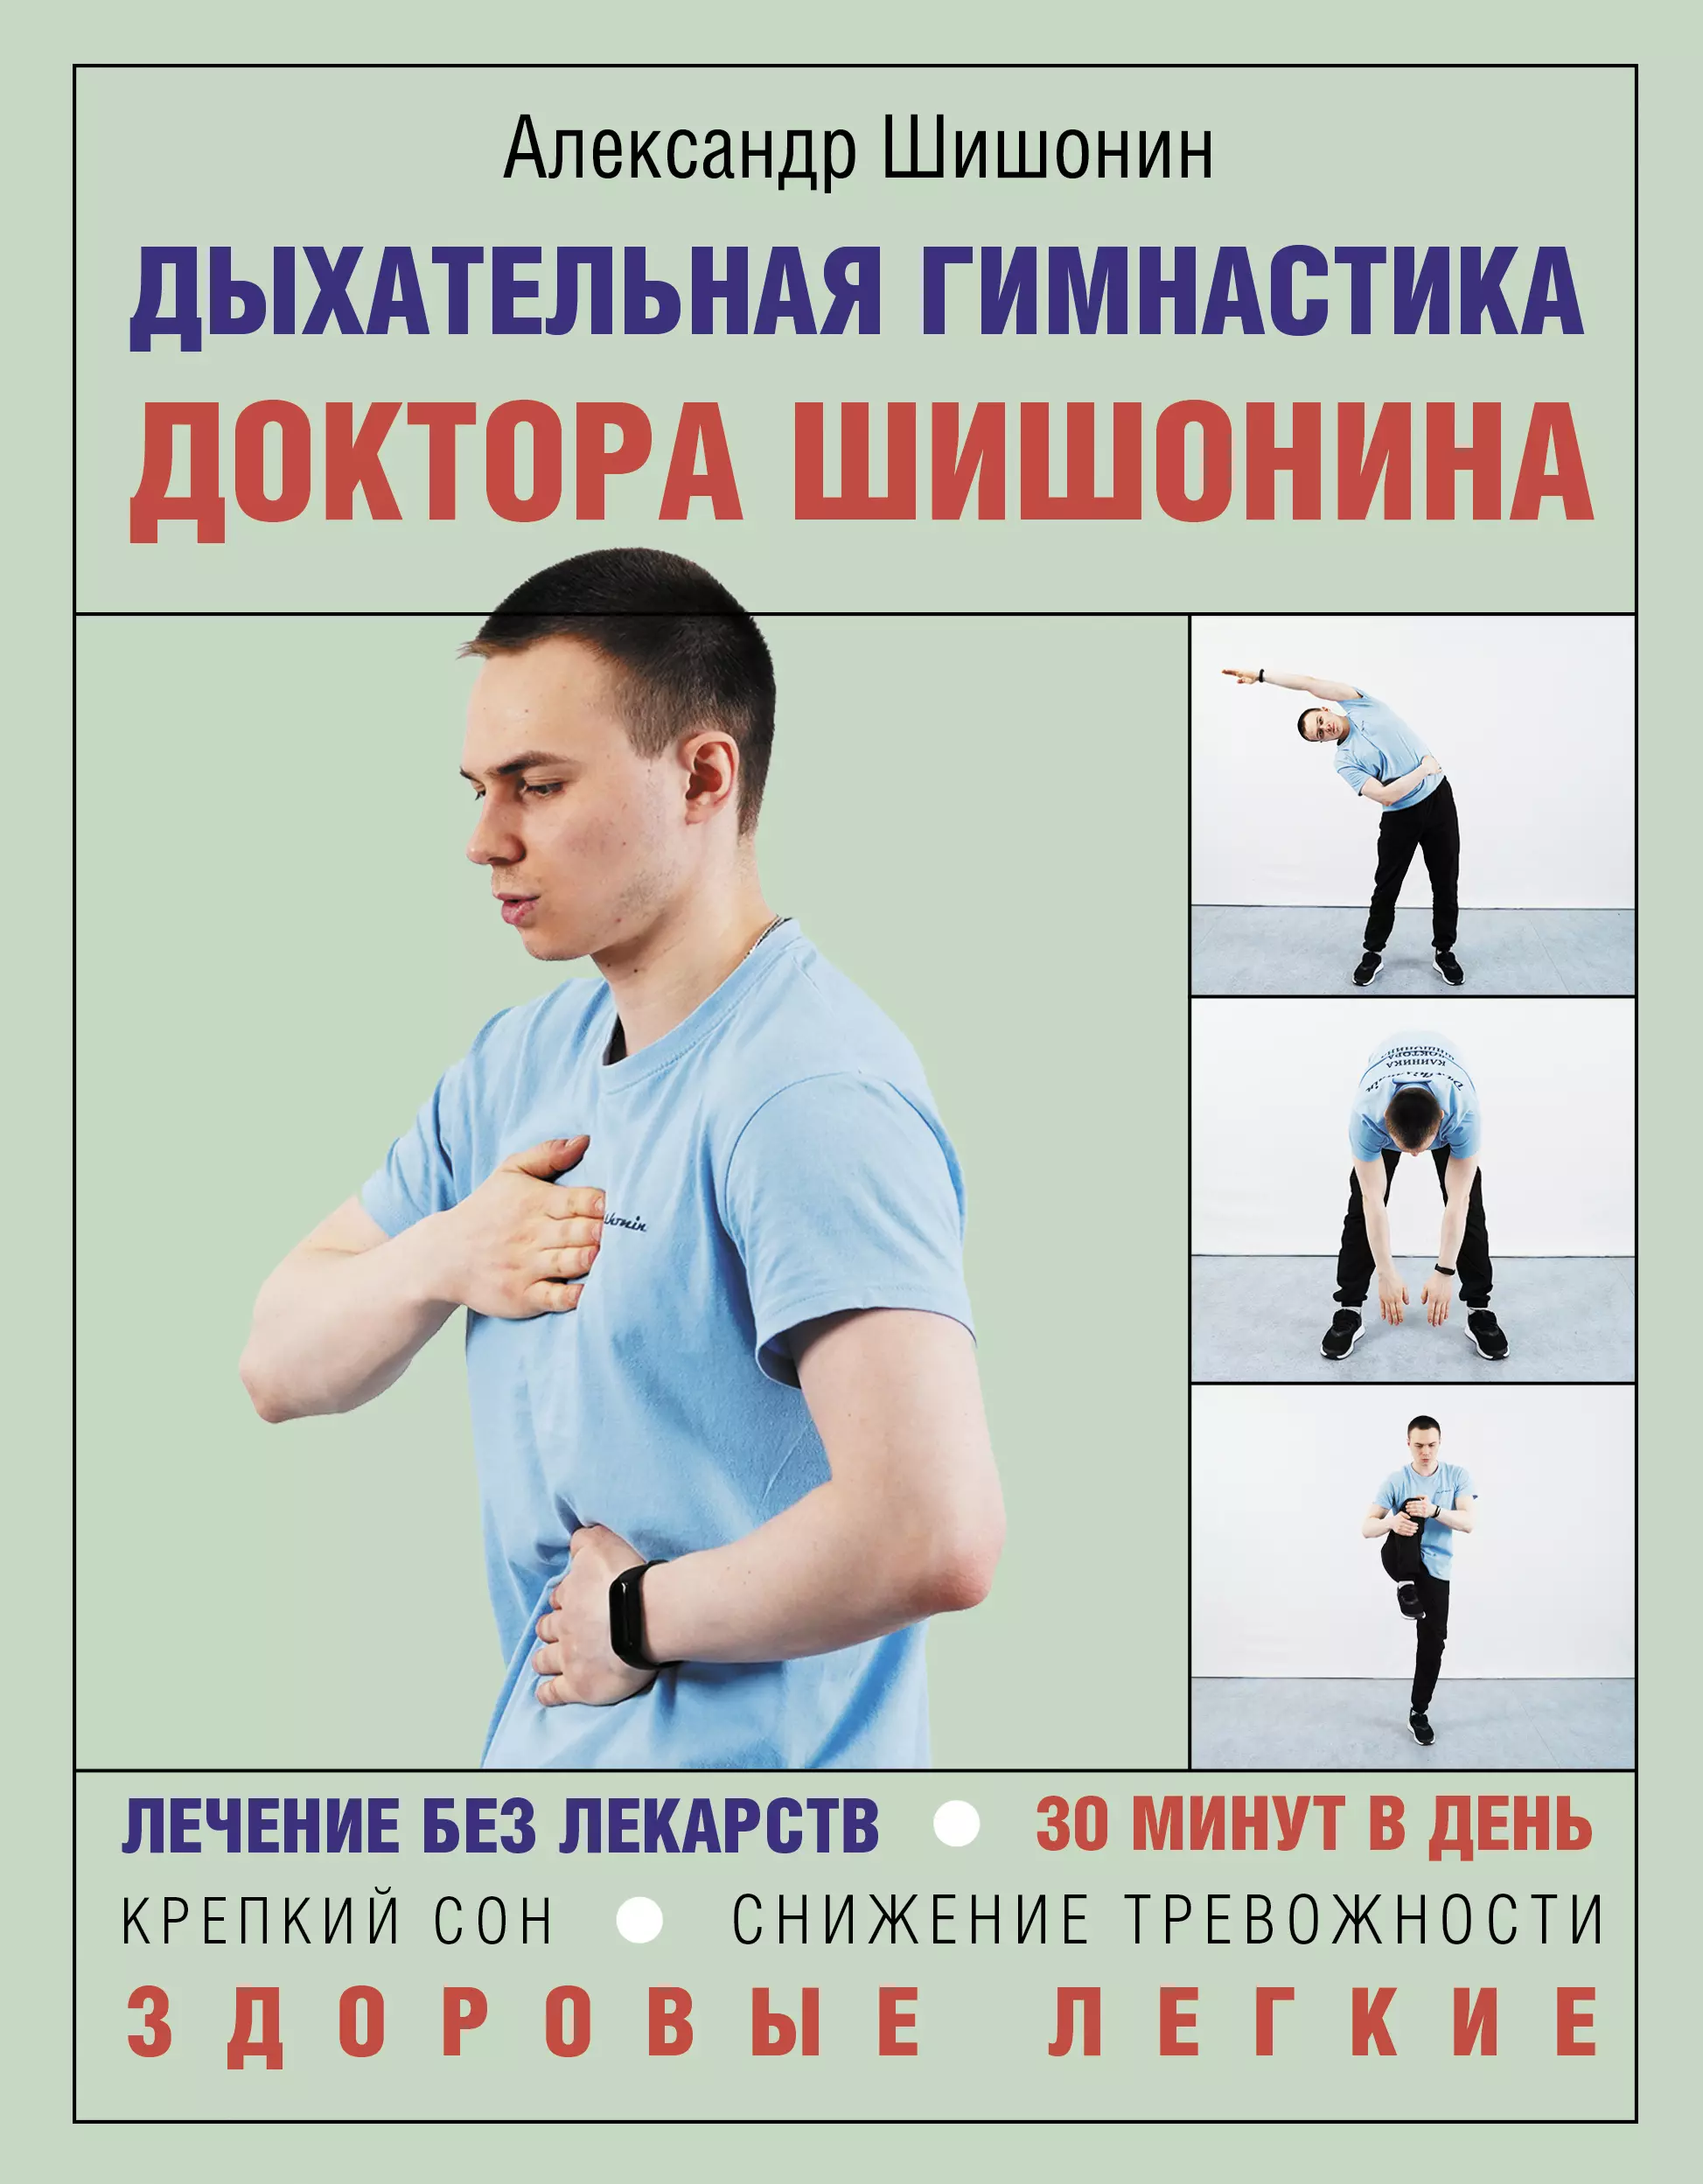 Дыхательная гимнастика доктора Шишонина пантелеева екатерина владимировна дыхательная гимнастика для детей